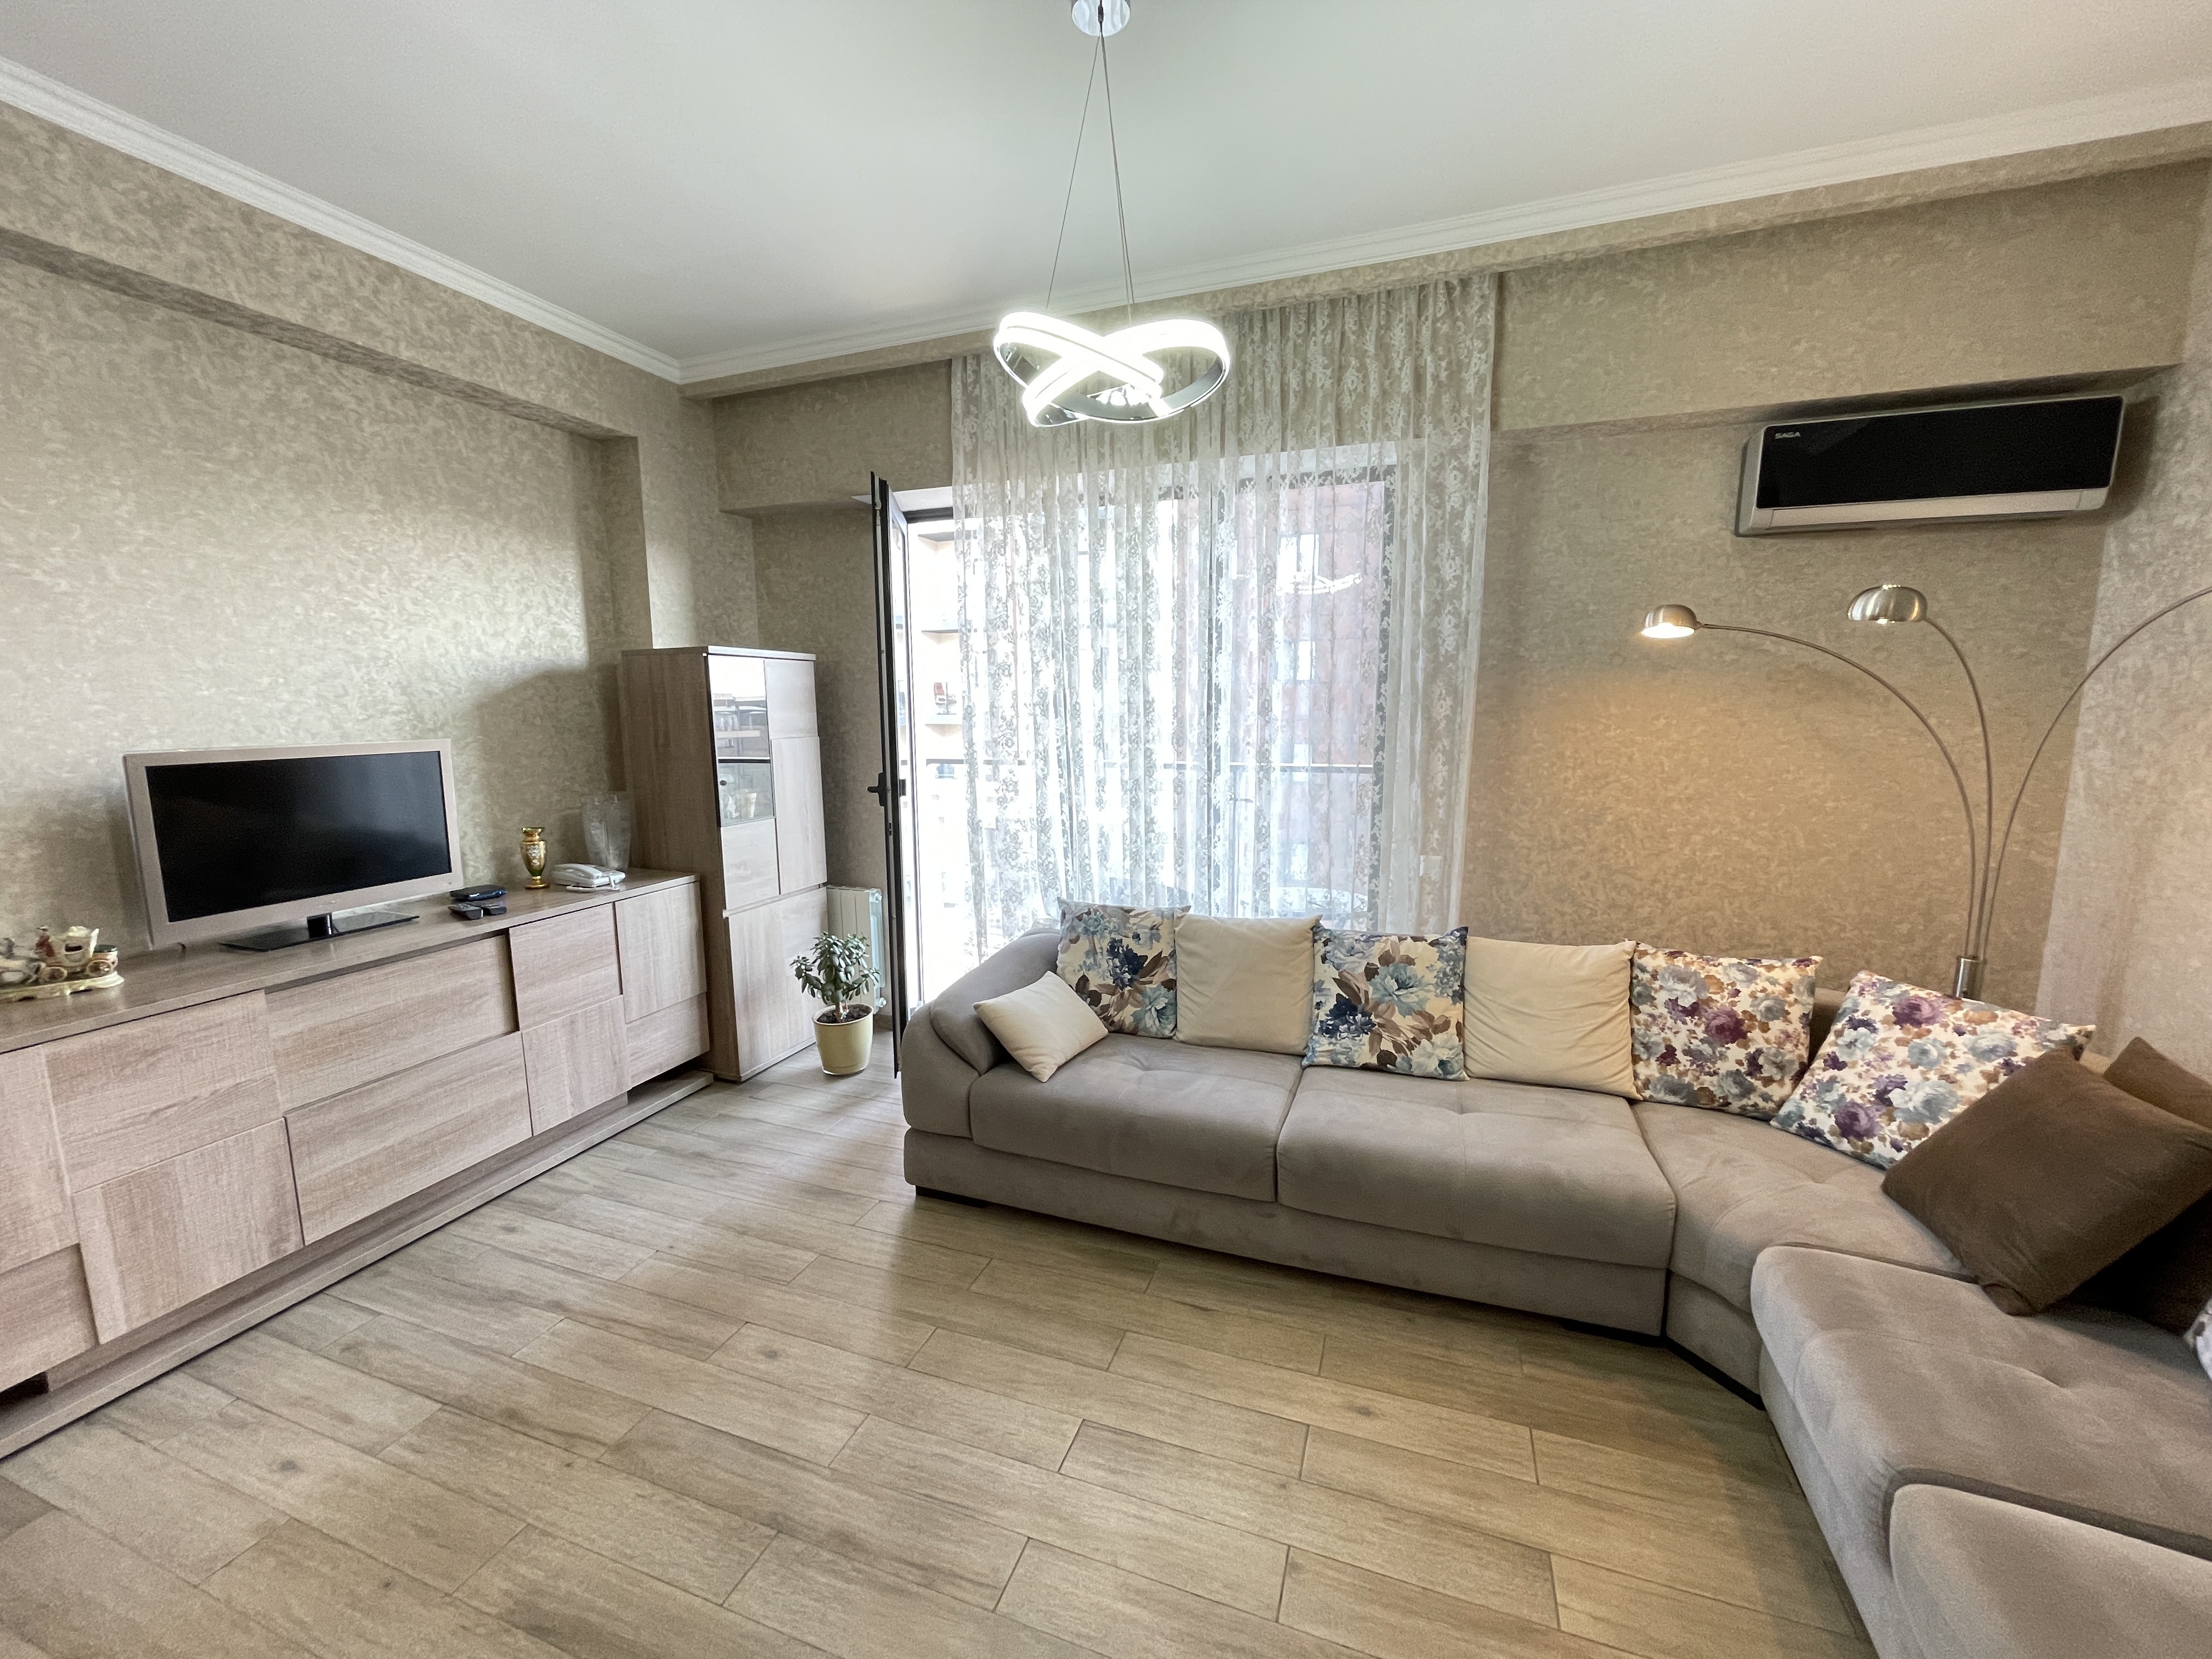 3-Room Apartment For Rent At “M2 On Kazbegi 2”